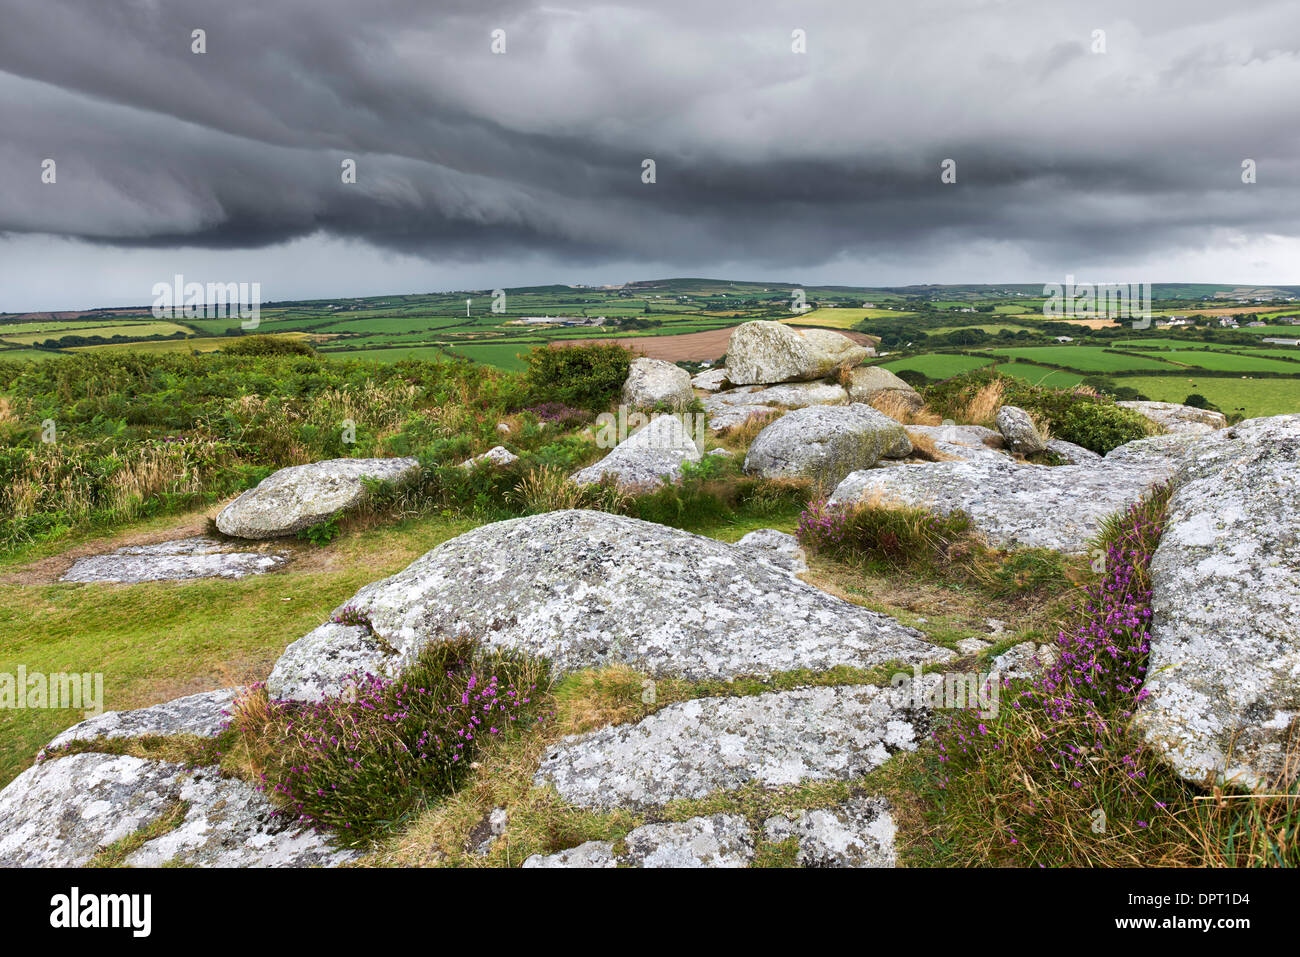 Storm clouds gathering au-dessus de la campagne des Cornouailles, West Cornwall Banque D'Images